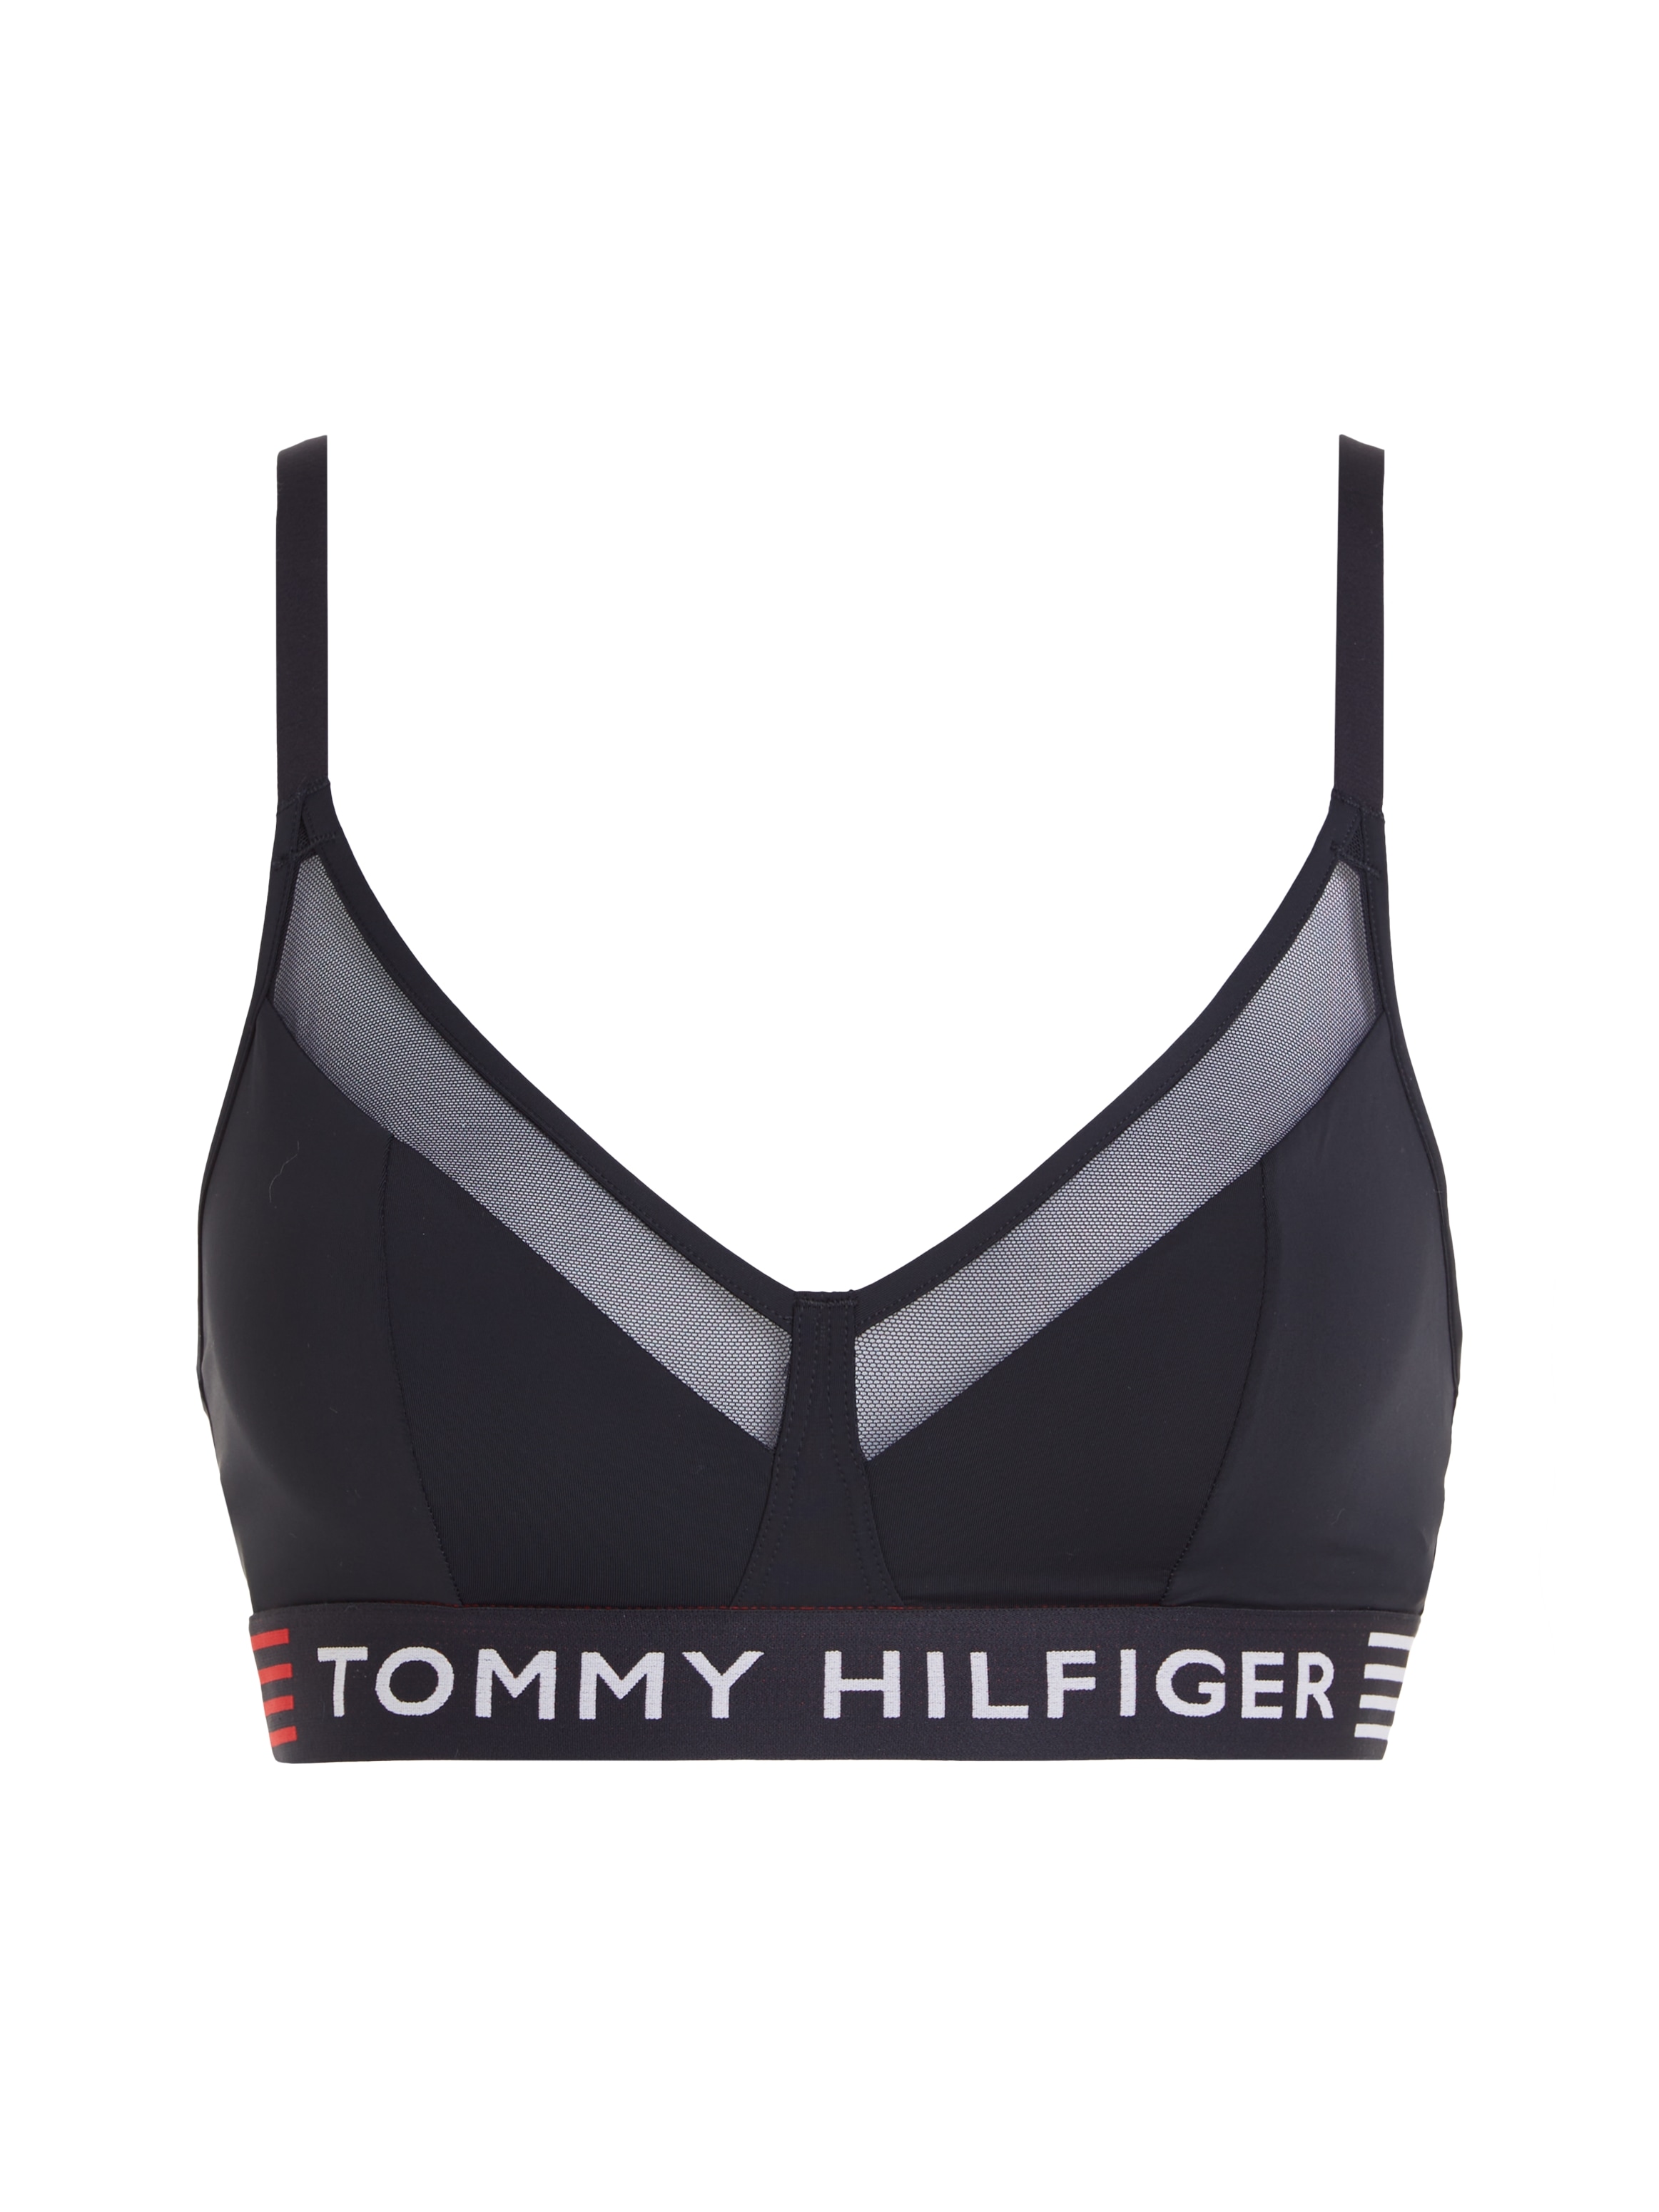 Online Hilfiger Hilfiger Tommy Underwear & Tommy Shop im mti Mesh-Einsatz Triangel-BH OTTO TRIANGLE«, »UNLINED Elastiktape